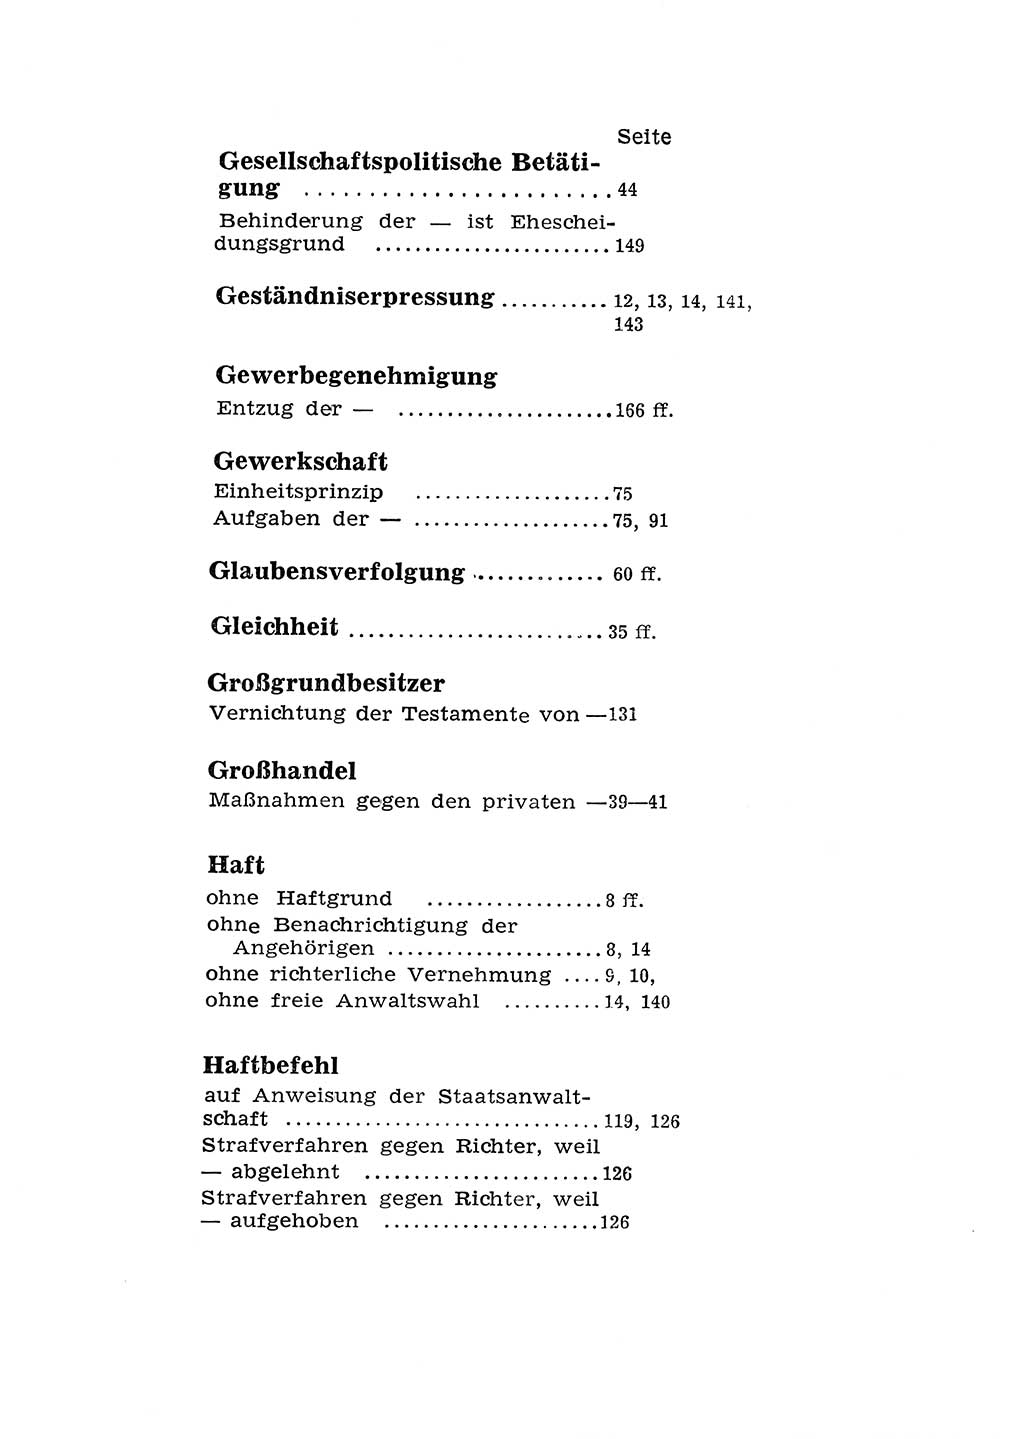 Katalog des Unrechts, Untersuchungsausschuß Freiheitlicher Juristen (UfJ) [Bundesrepublik Deutschland (BRD)] 1956, Seite 200 (Kat. UnR. UfJ BRD 1956, S. 200)